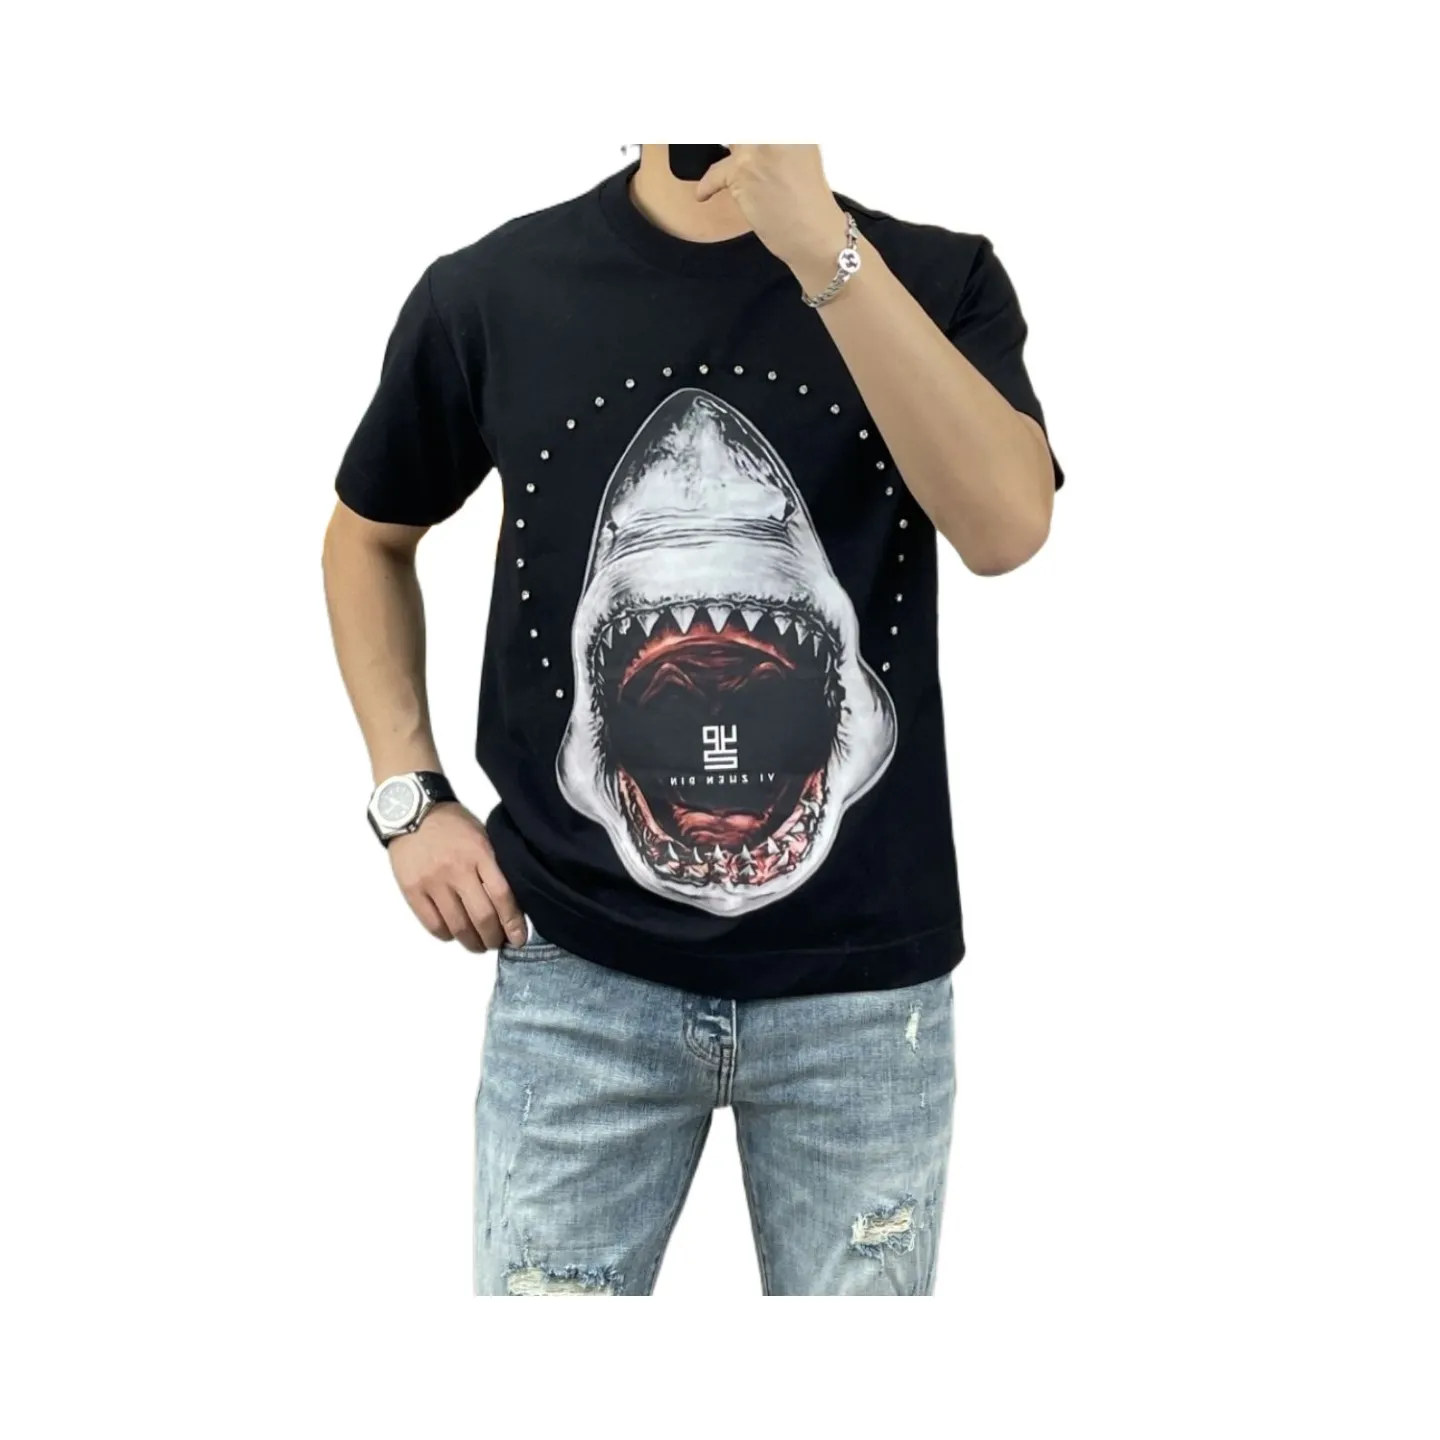 Europese Nieuwe T-shirt Zomer Shark Print Ronde Hals Korte Mouw Heren Losse T-shirt Big Guy Mode Veelzijdig